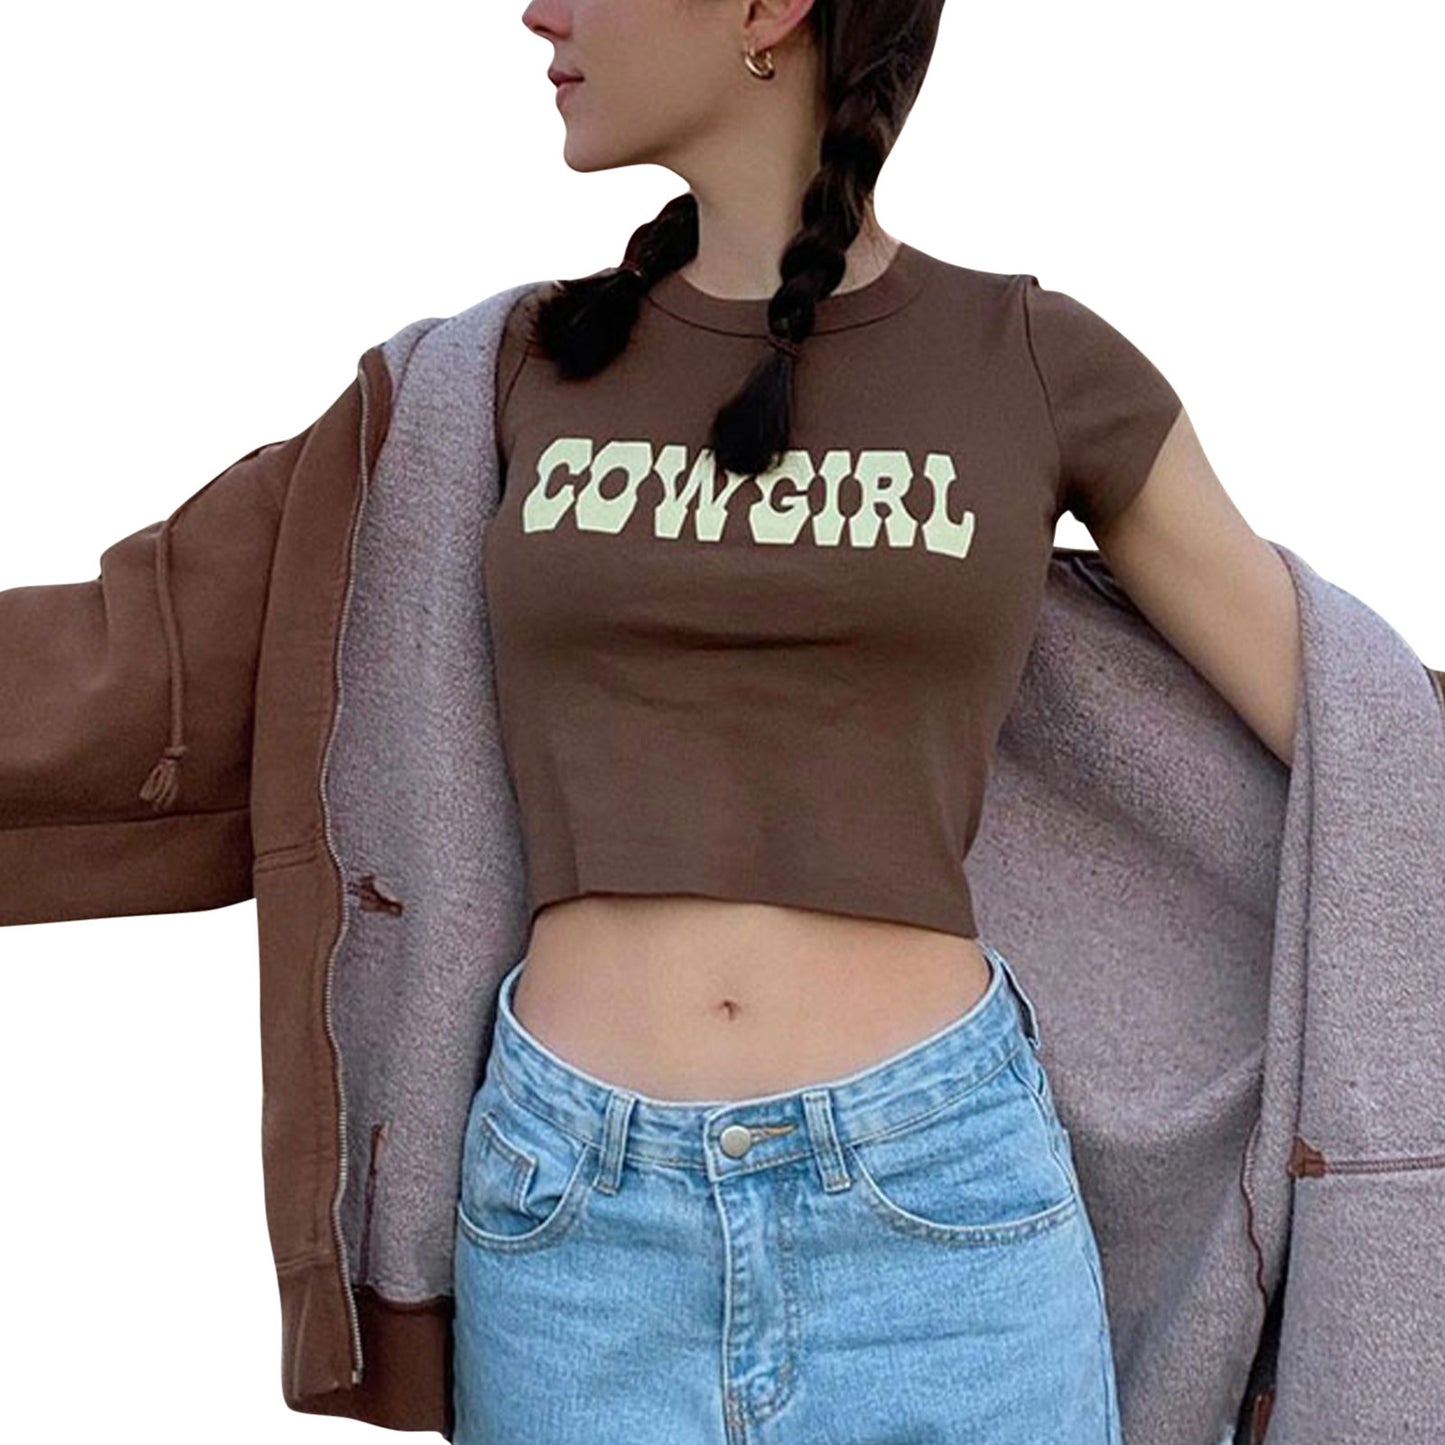 Women's Cowgirl Crop Top